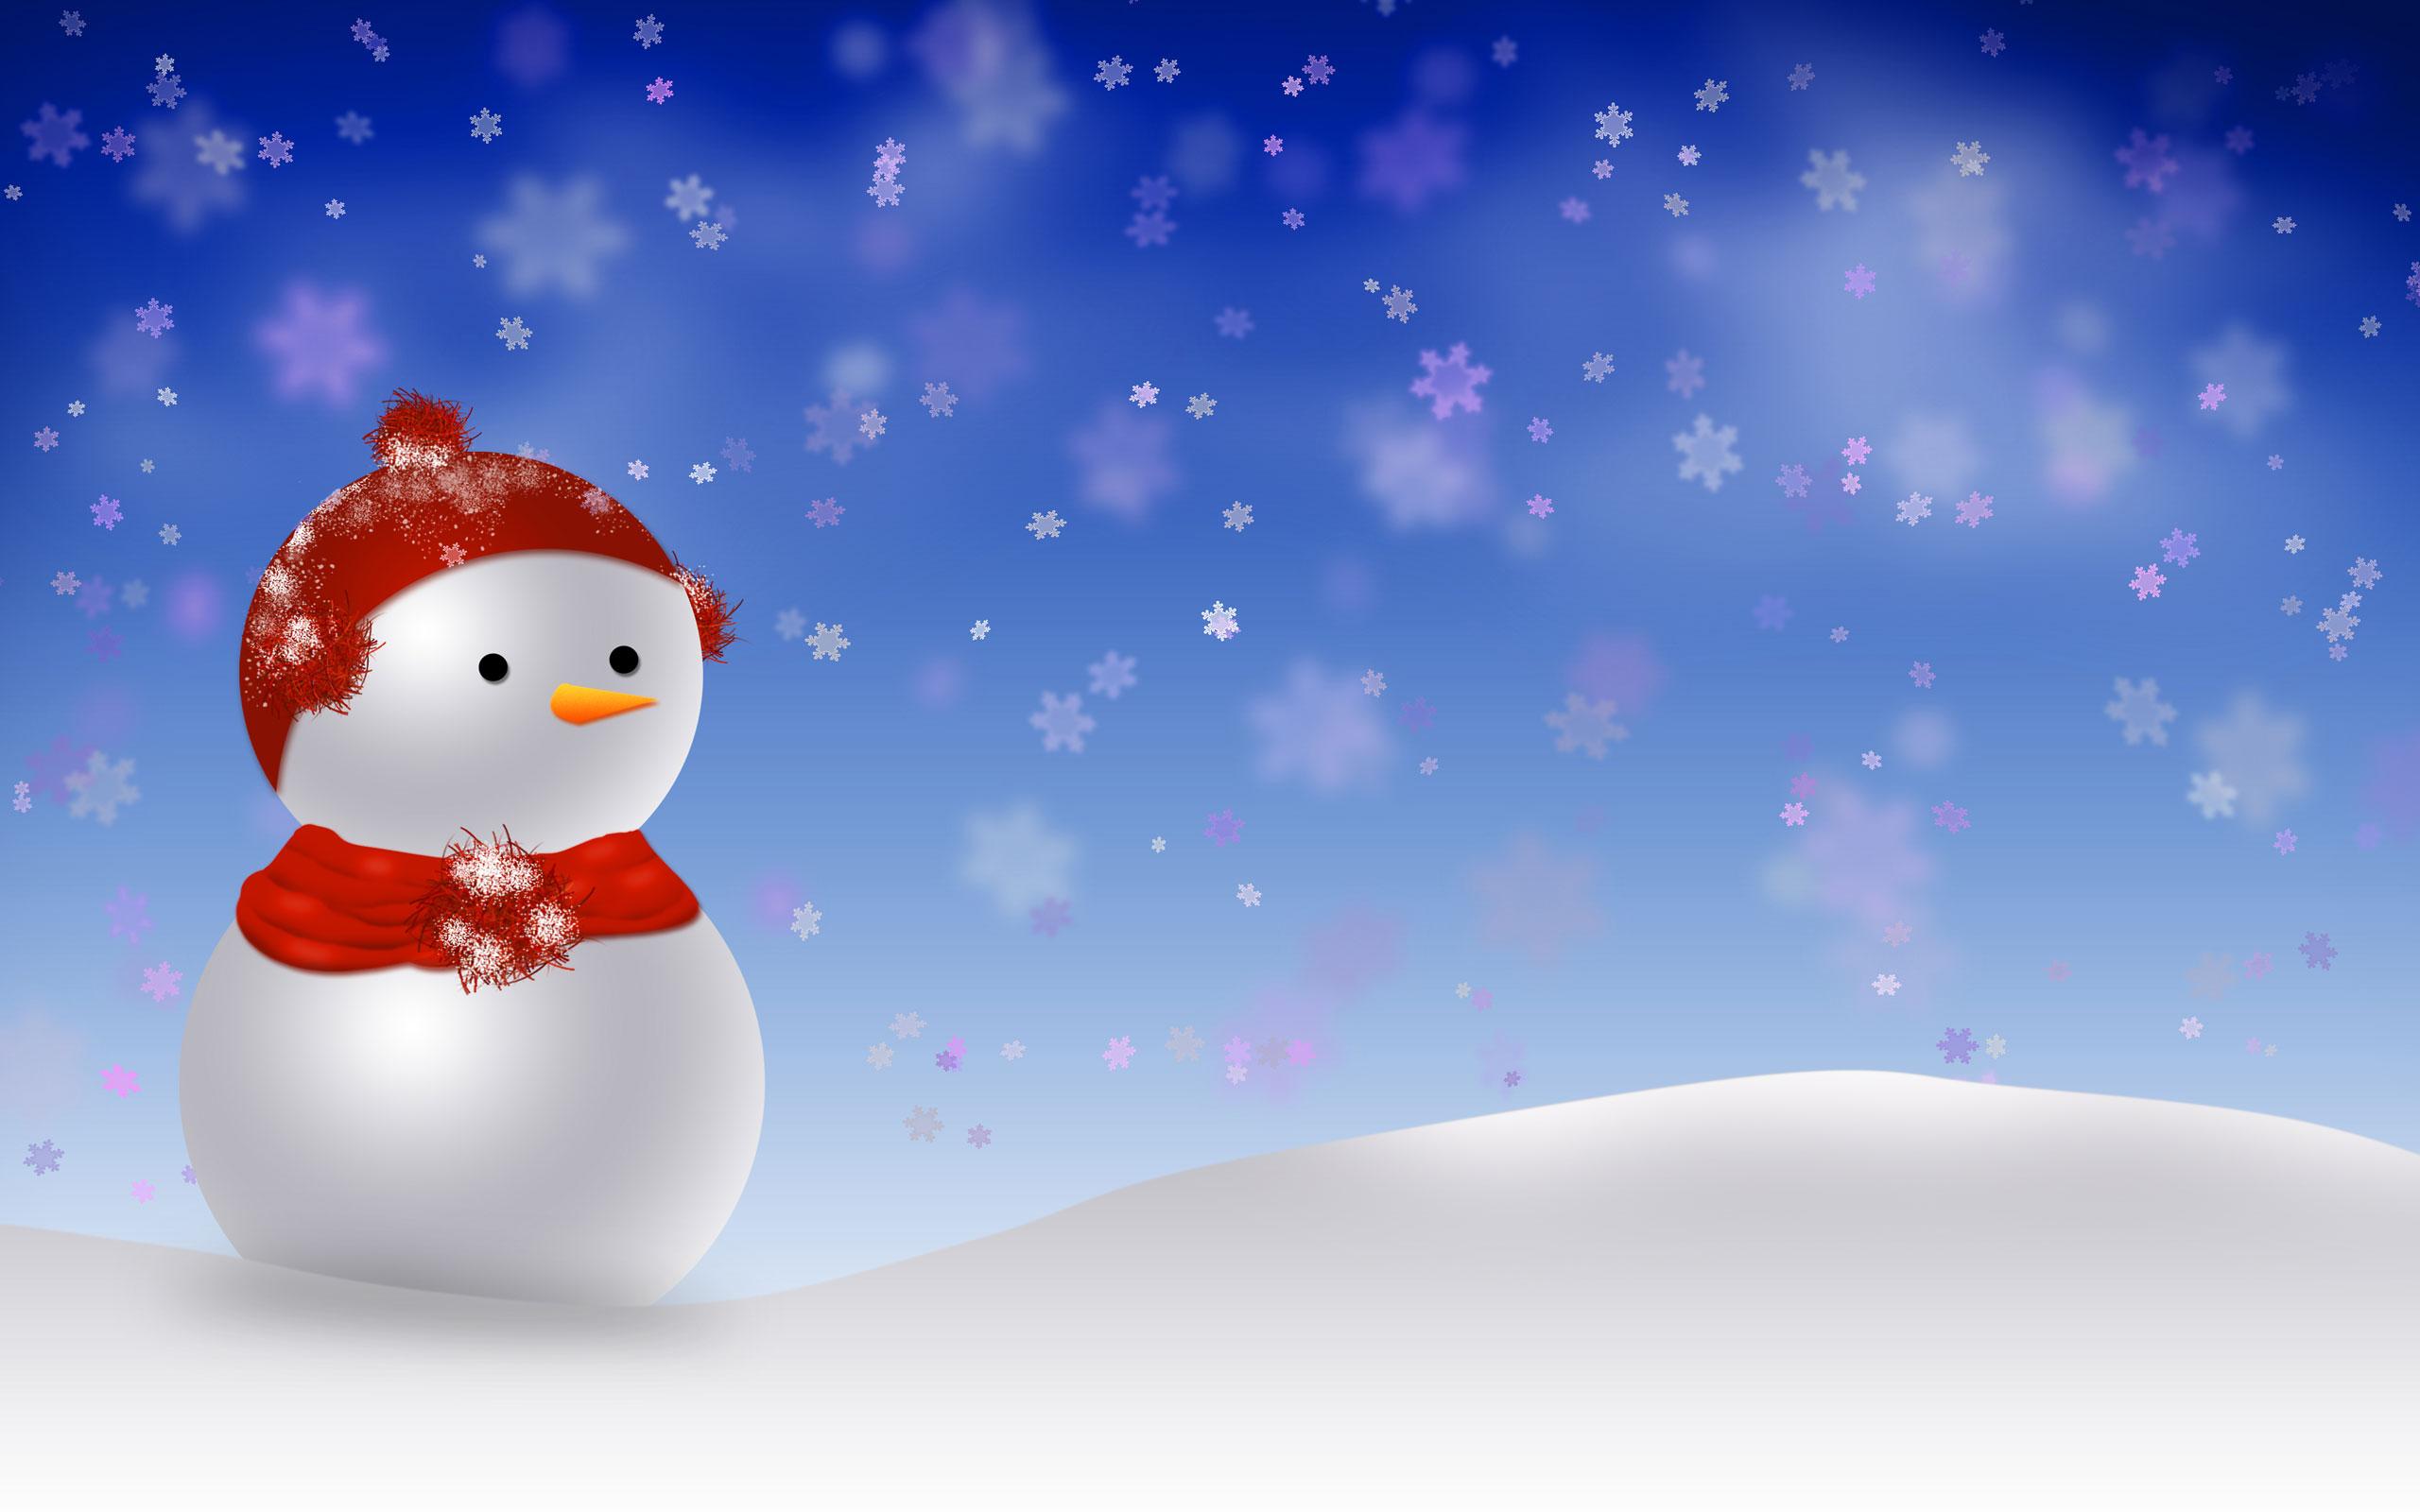 Snowman Wallpaper Free Download